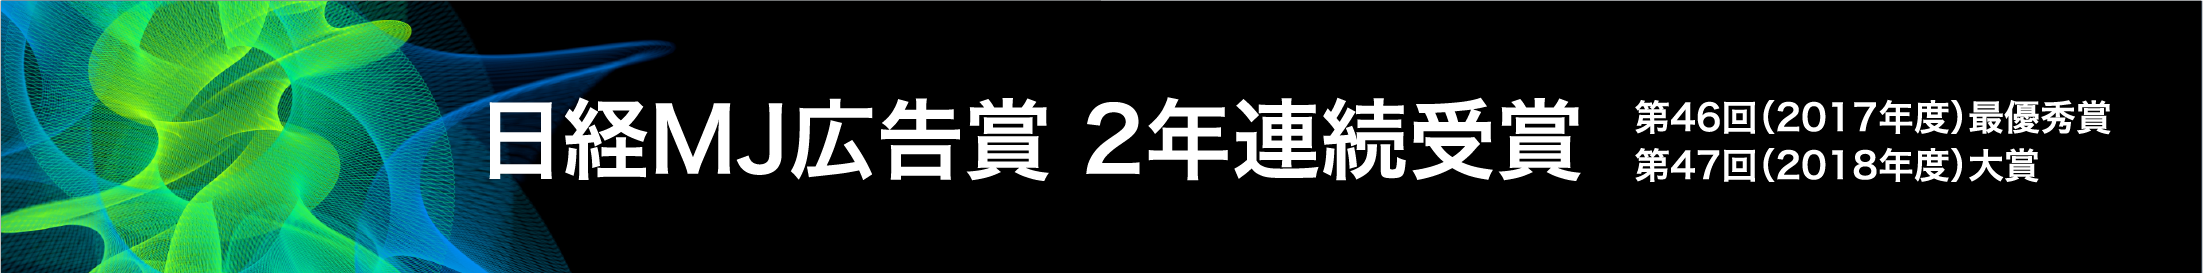 日経MJ広告賞 2年連続受賞 第46回（2017年度）最優秀賞 第47回（2018年度）大賞